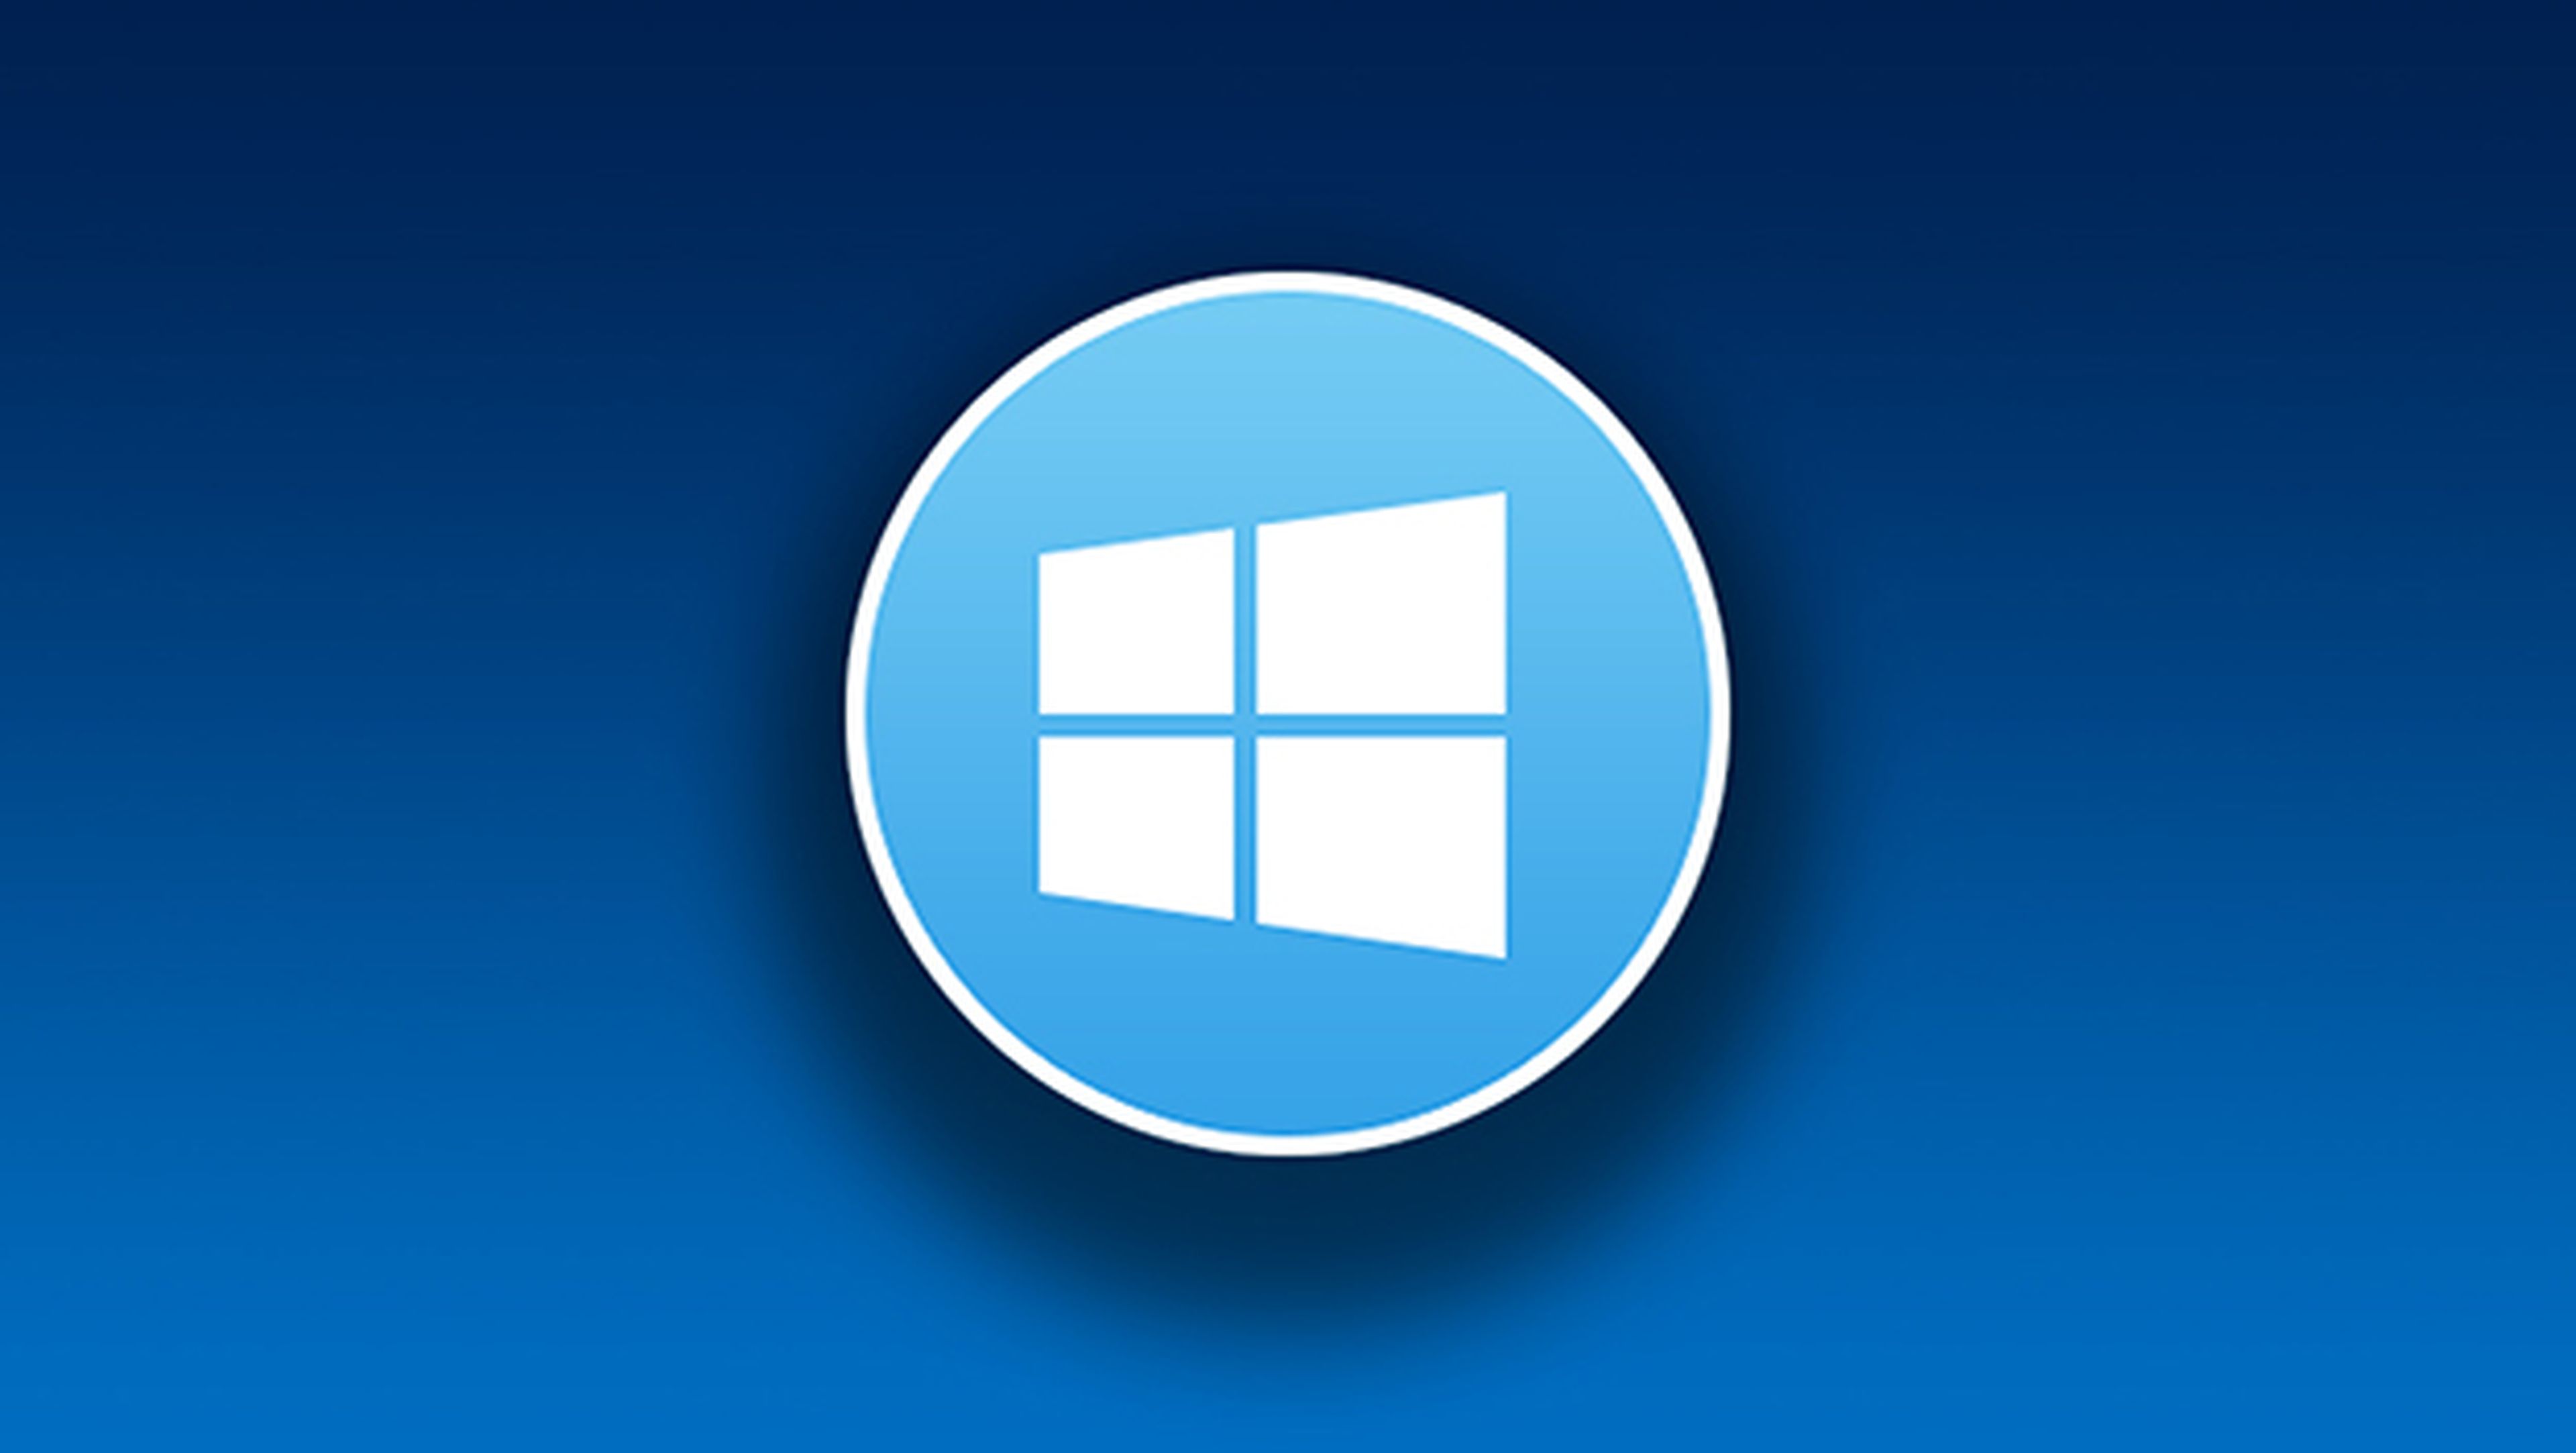 Podrían volver las actualizaciones forzadas en Windows 10